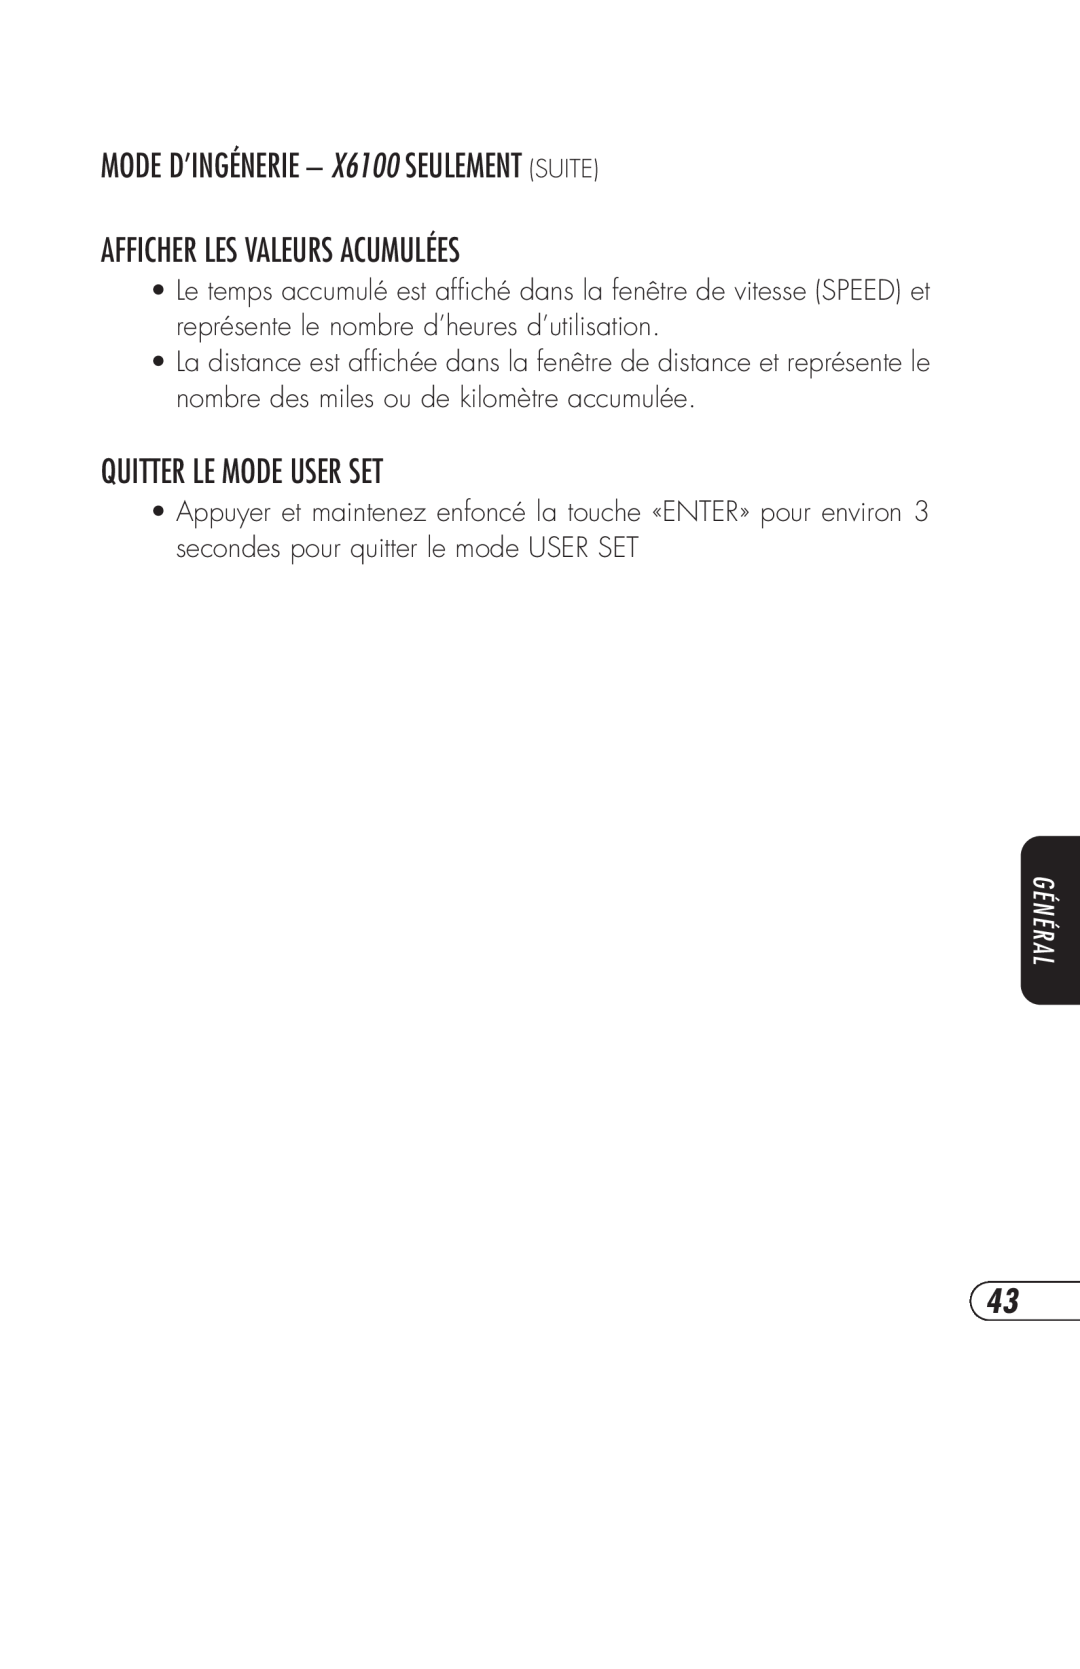 Vision Fitness R2250HRT MODE D’INGÉNERIE - X6100 SEULEMENT SUITE, Afficher Les Valeurs Acumulées, Quitter Le Mode User Set 